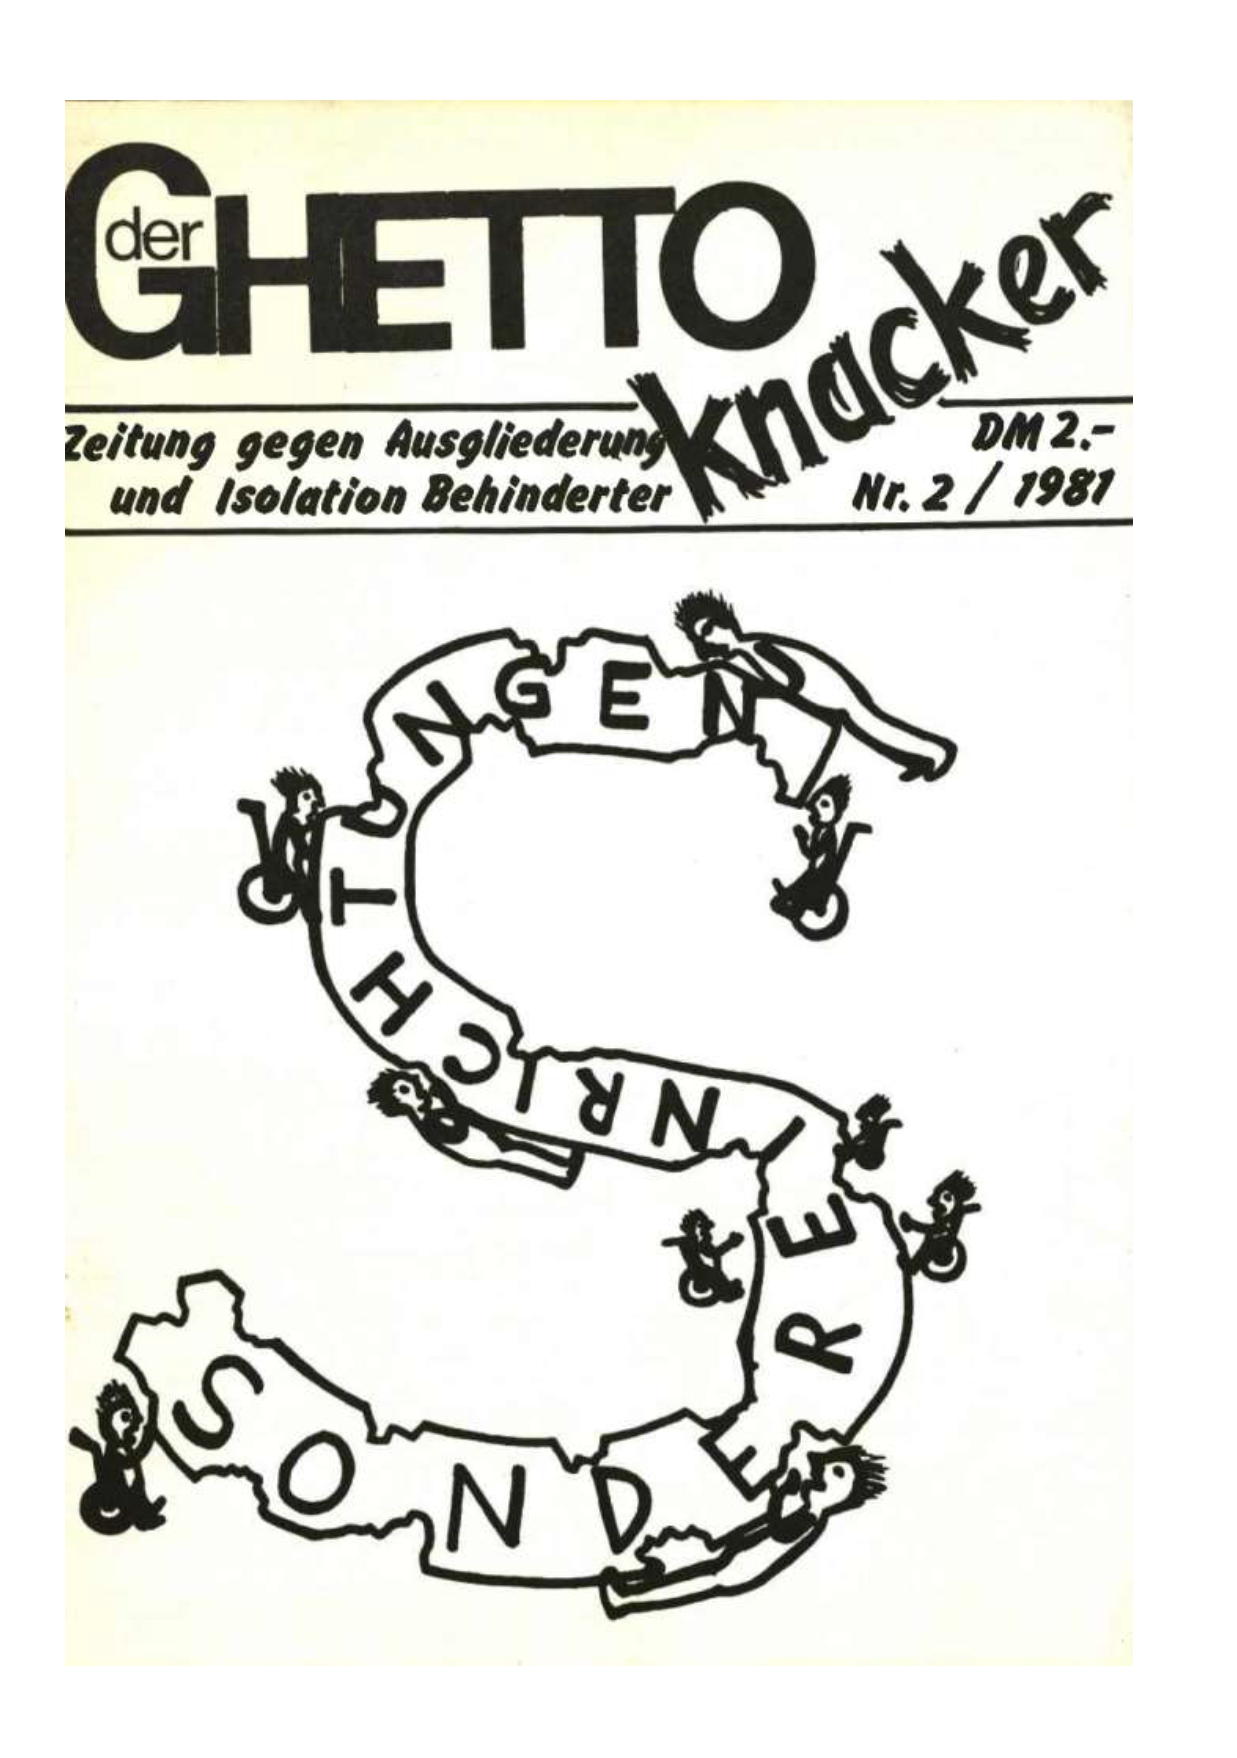 Deckblatt Ghettoknacker  2-1981